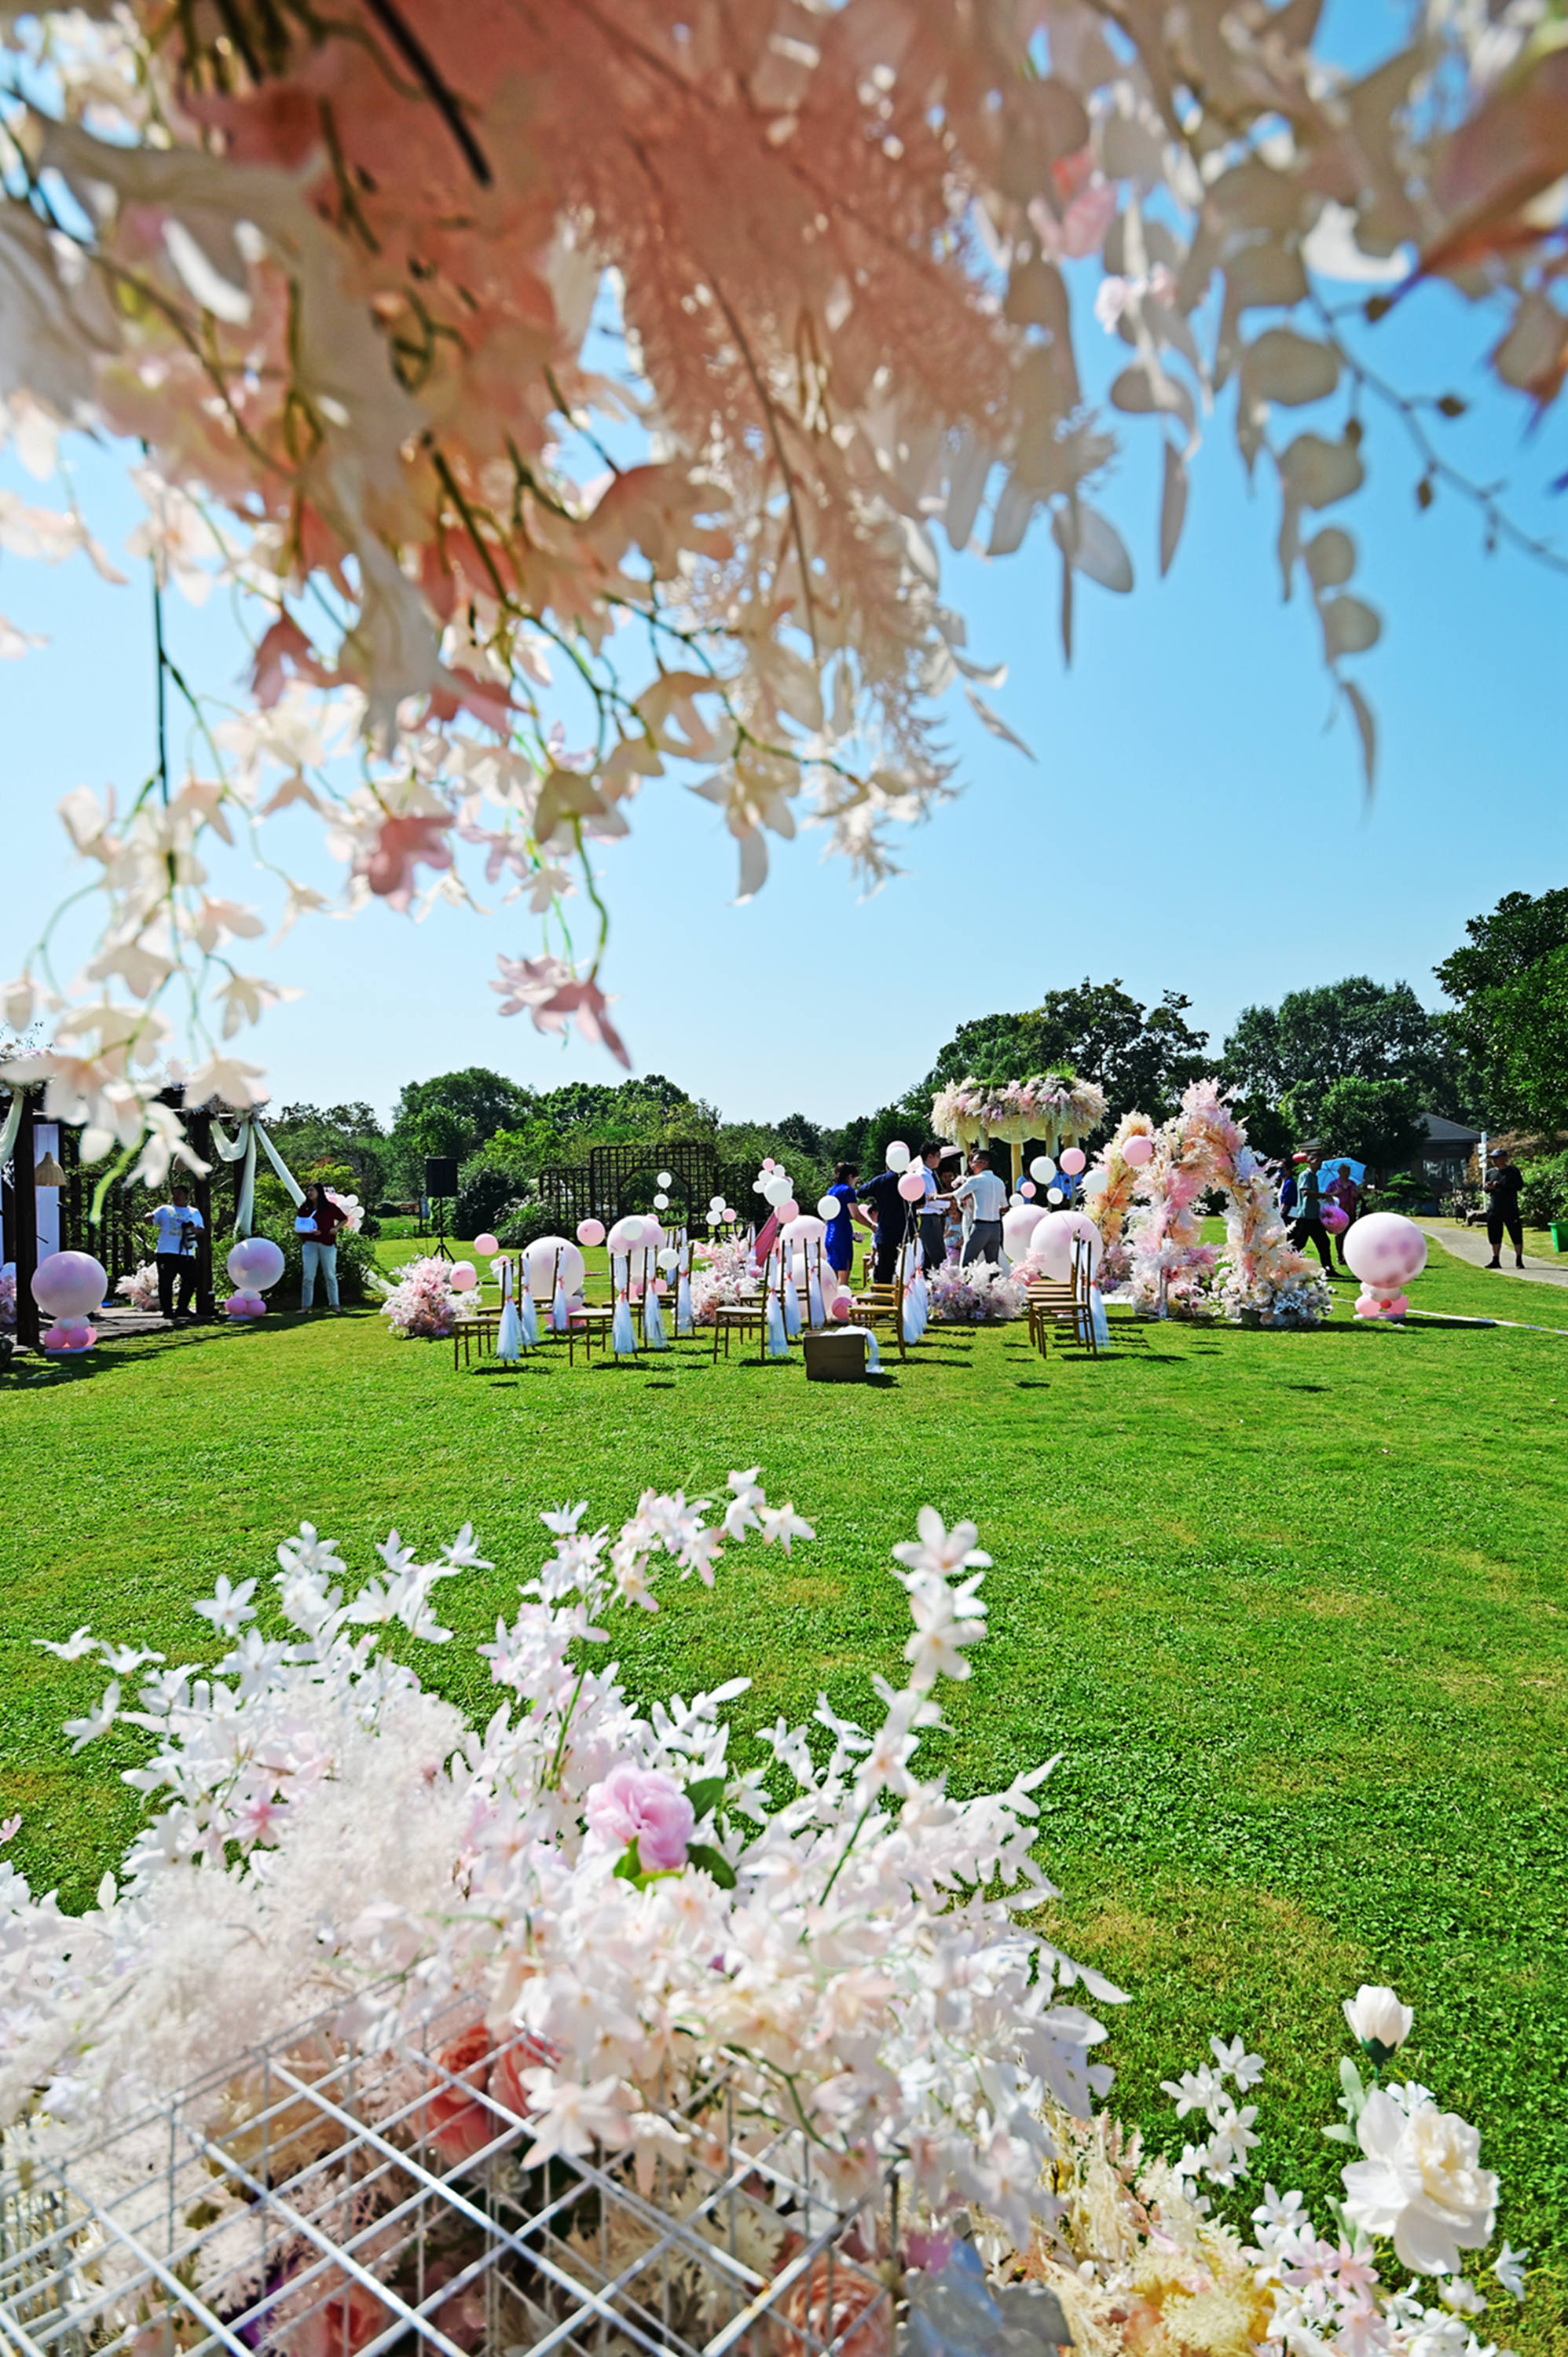 无锡鹅湖玫瑰园的草坪婚礼,温馨又浪漫,时尚有情调